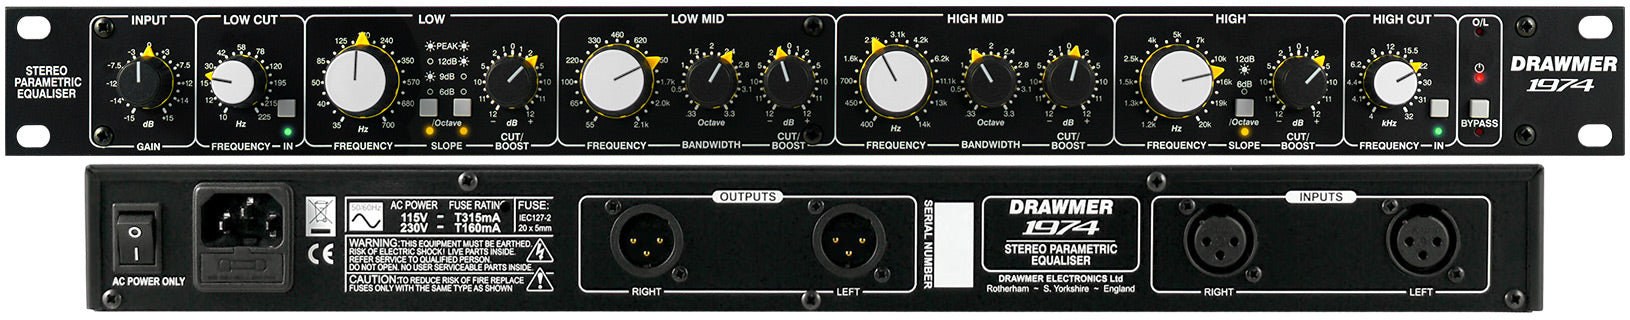 Drawmer 1974 - Stereo Parametric Equaliser